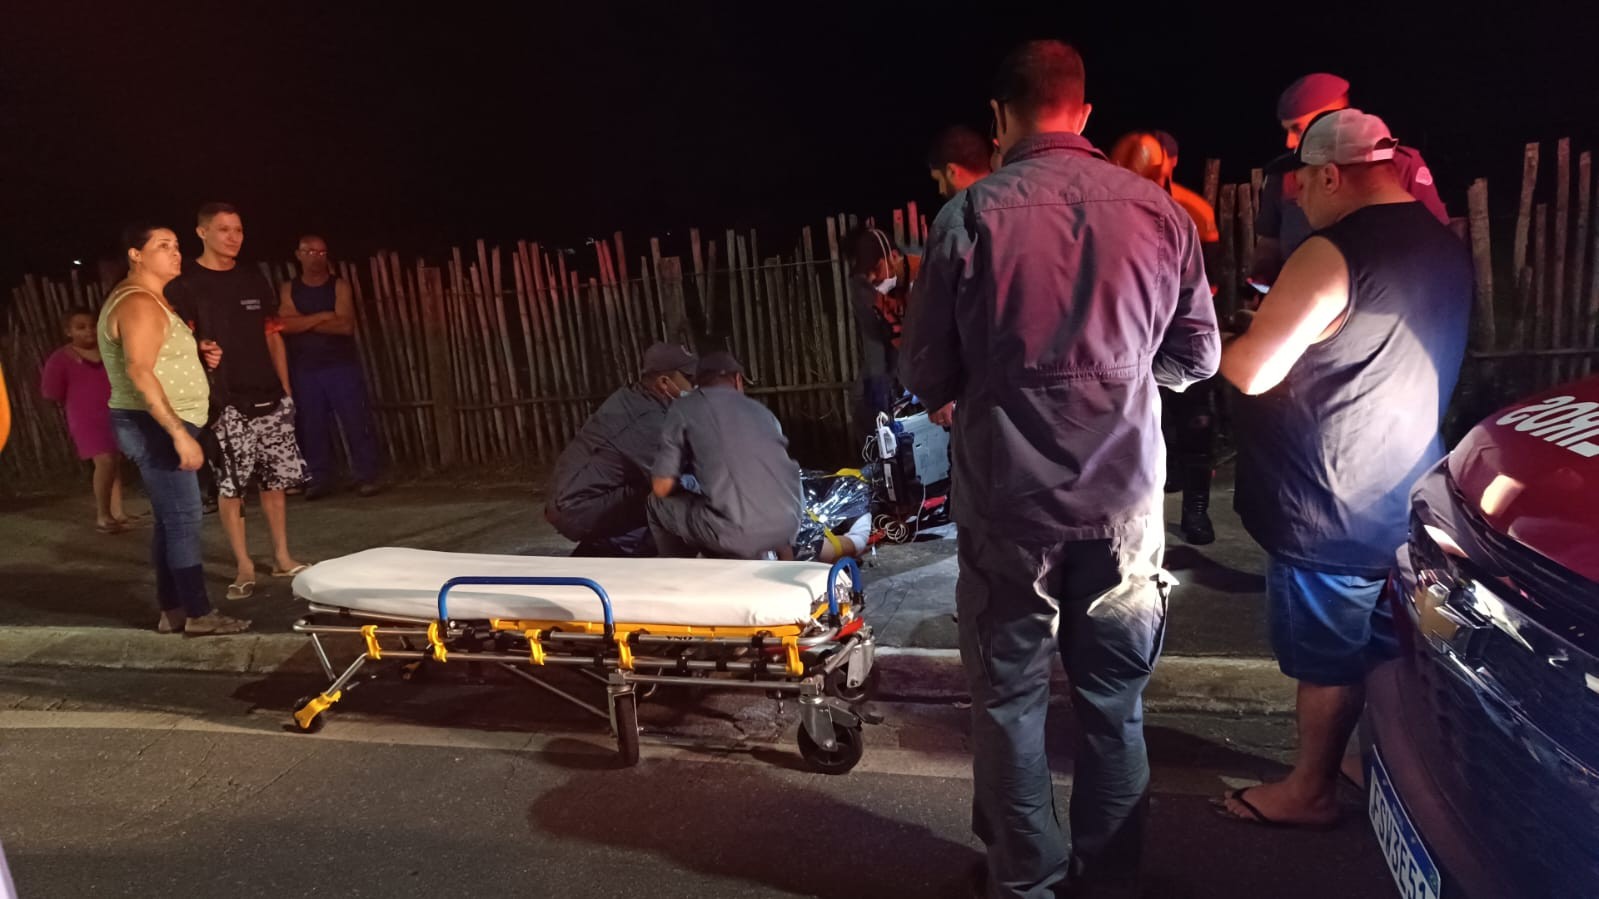 Jovem de 19 anos fica ferido após colidir moto em poste em São José dos Campos, SP